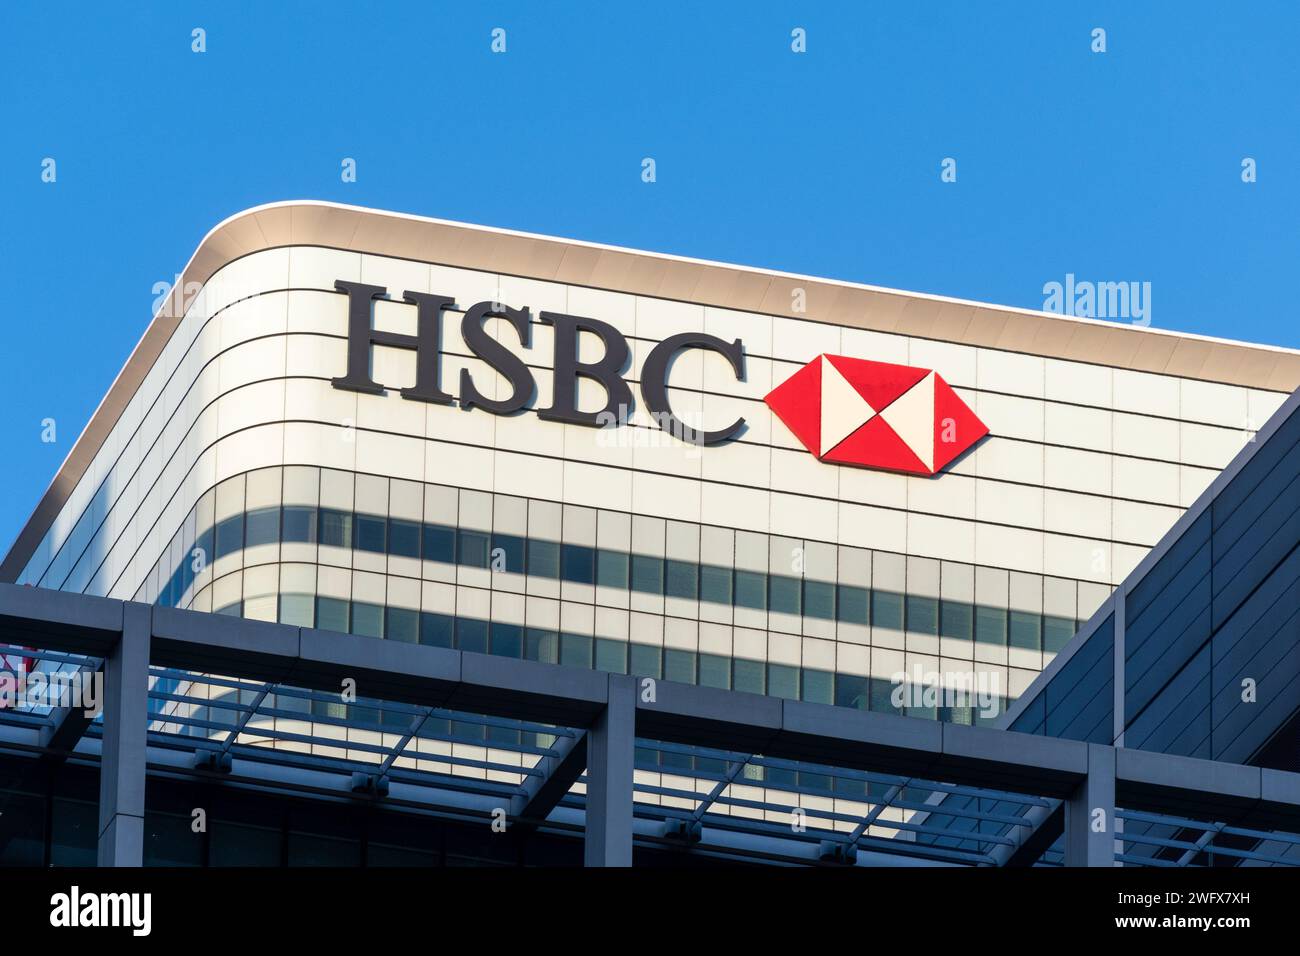 Enseigne et logo HSBC sur la Tour HSBC au 8 Canada Square, bâtiment du siège social mondial de HSBC Holdings, Canary Wharf, Londres, Angleterre, Royaume-Uni Banque D'Images